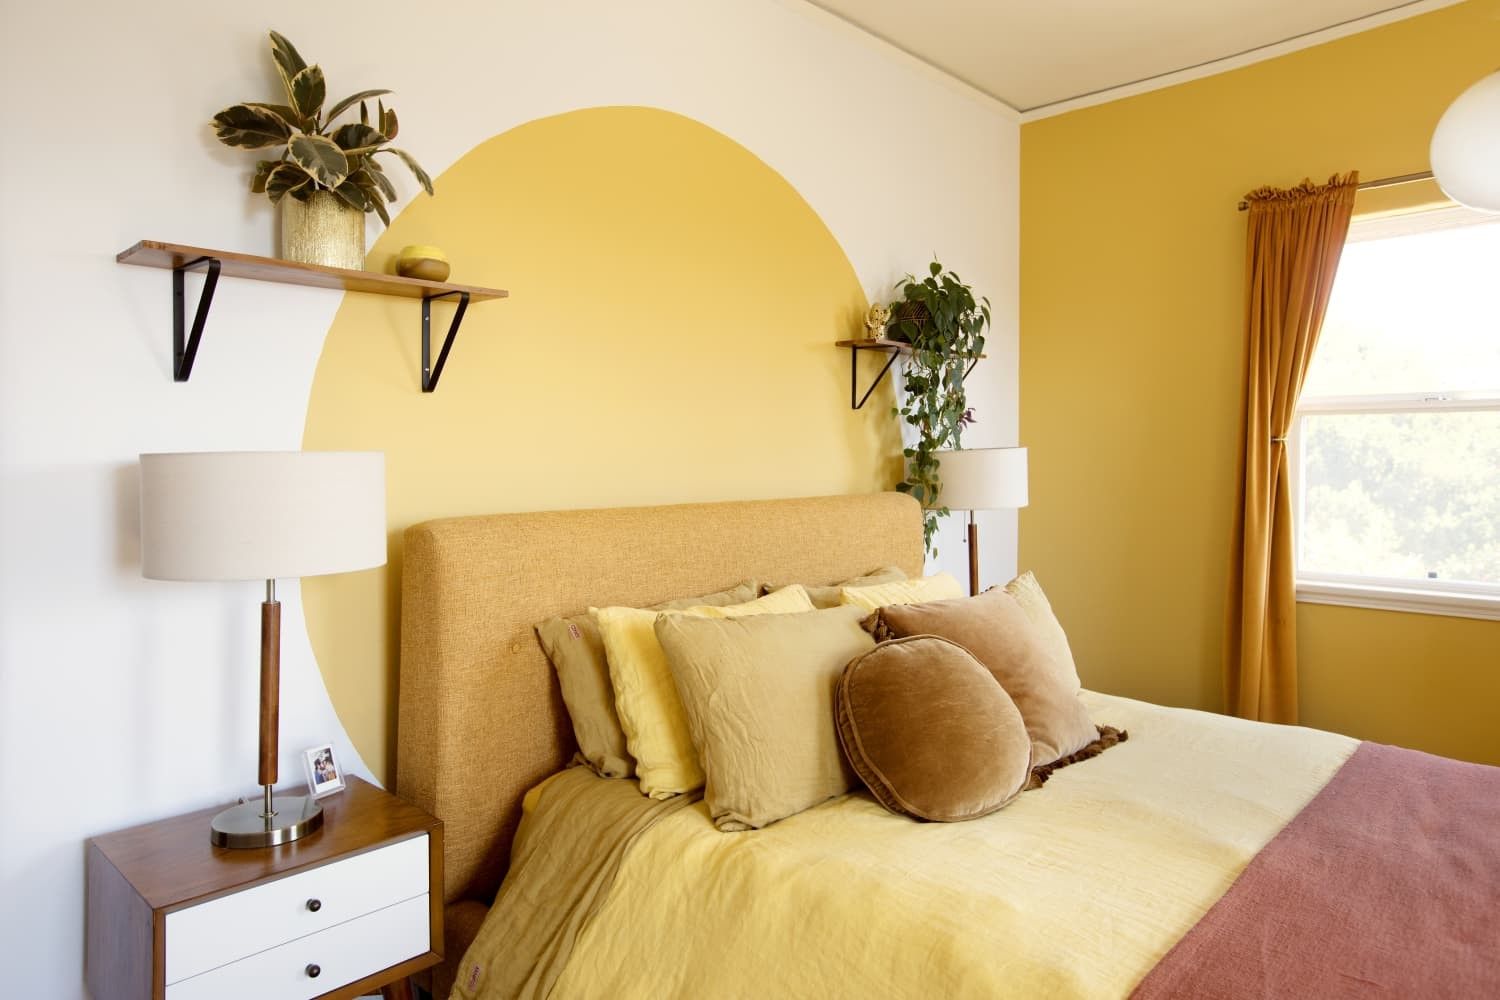 Nên tiết chế màu vàng bằng cách sử dụng màu pastel để giảm độ chói của căn phòng